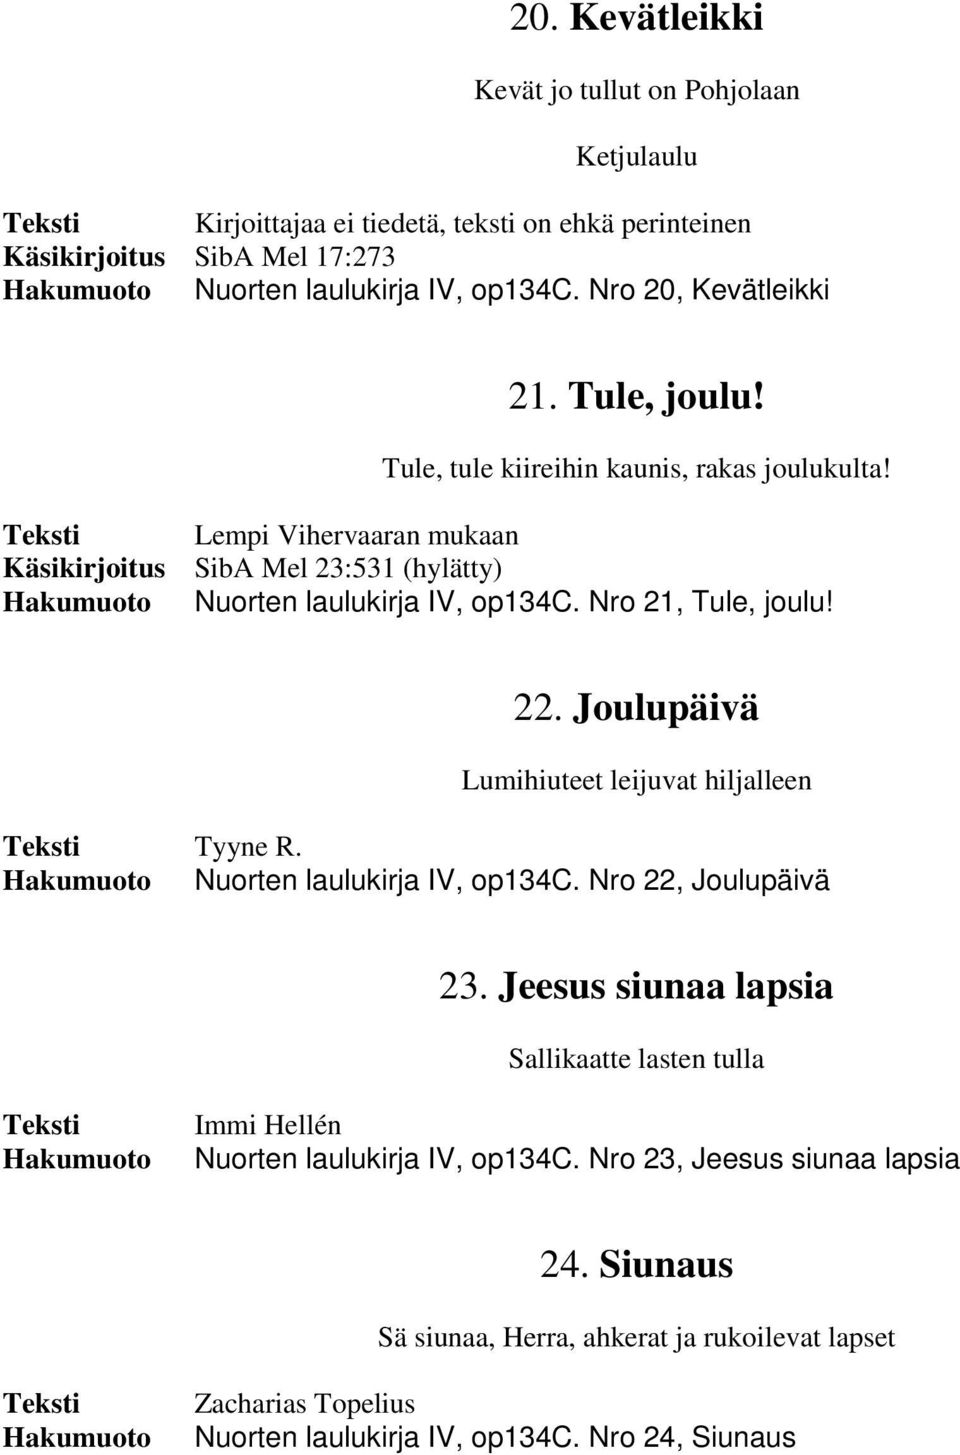 Käsikirjoitus Lempi Vihervaaran mukaan SibA Mel 23:531 (hylätty) Nuorten laulukirja IV, op134c. Nro 21, Tule, joulu! 22. Joulupäivä Lumihiuteet leijuvat hiljalleen Tyyne R.